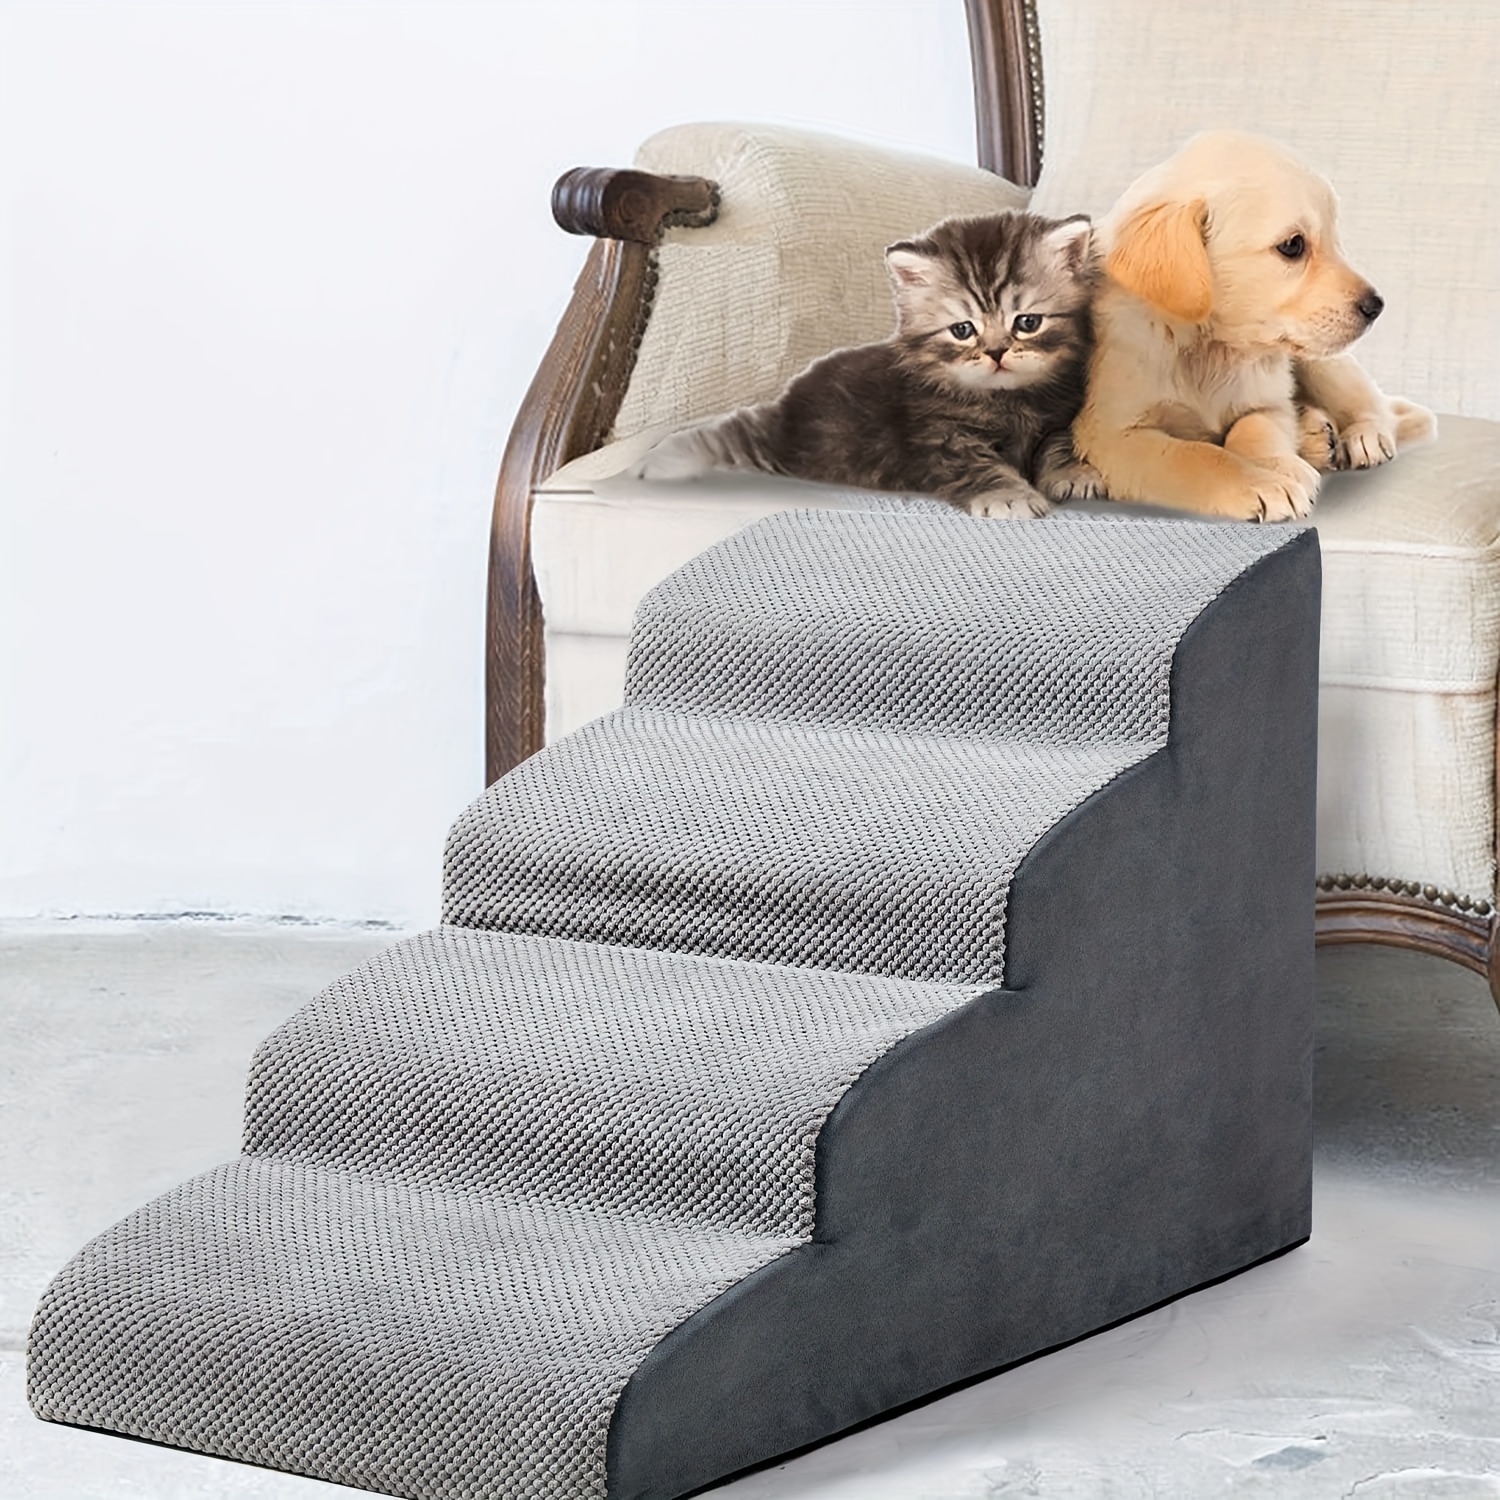 Scale e gradini: Prodotti per animali domestici 